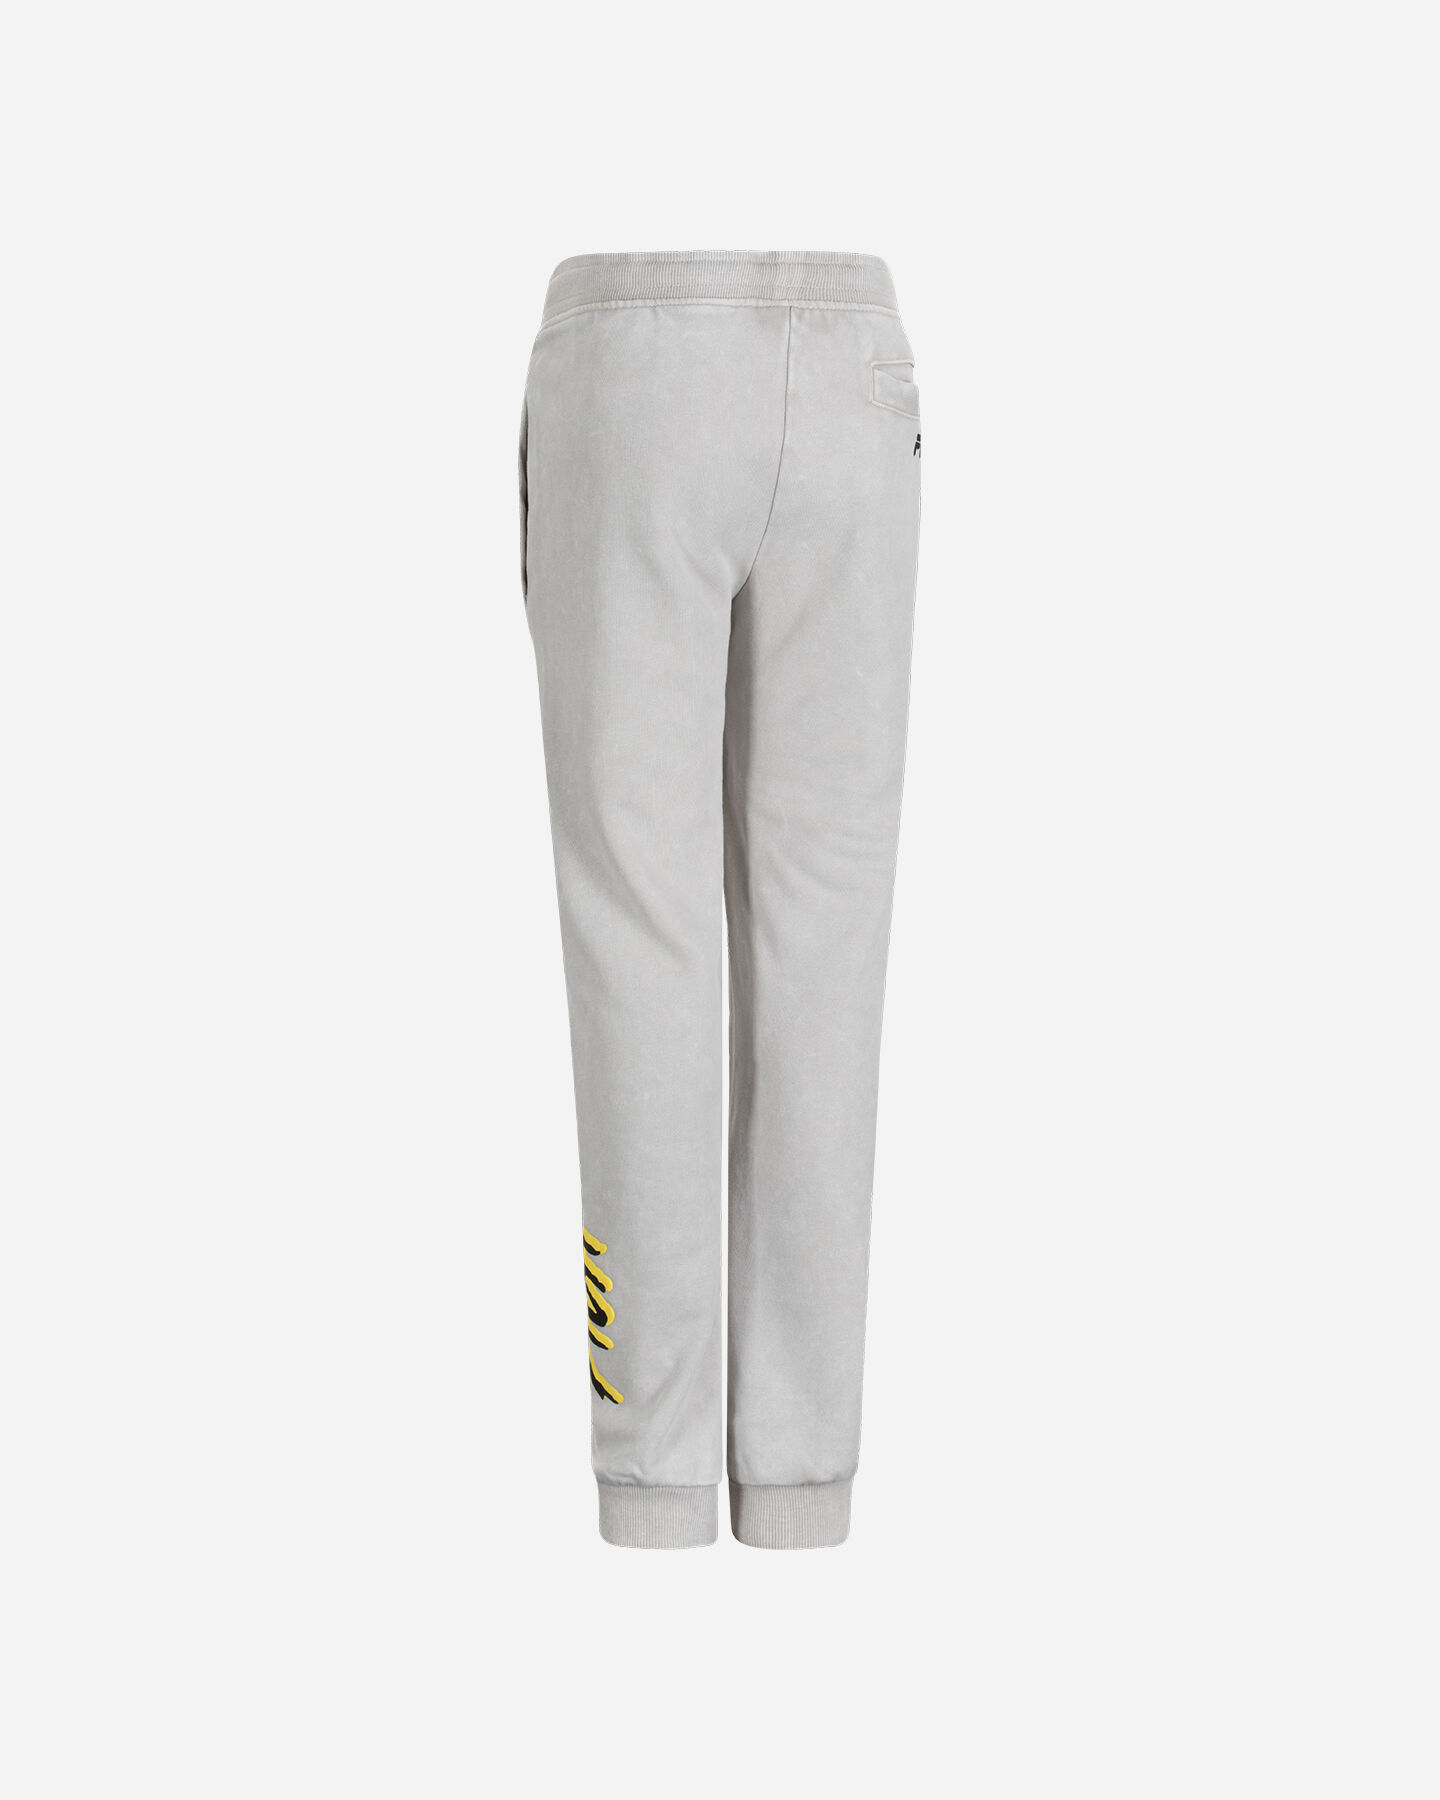  Pantalone FILA GRAPHIC PUNK JR S4119111|007|6A scatto 1